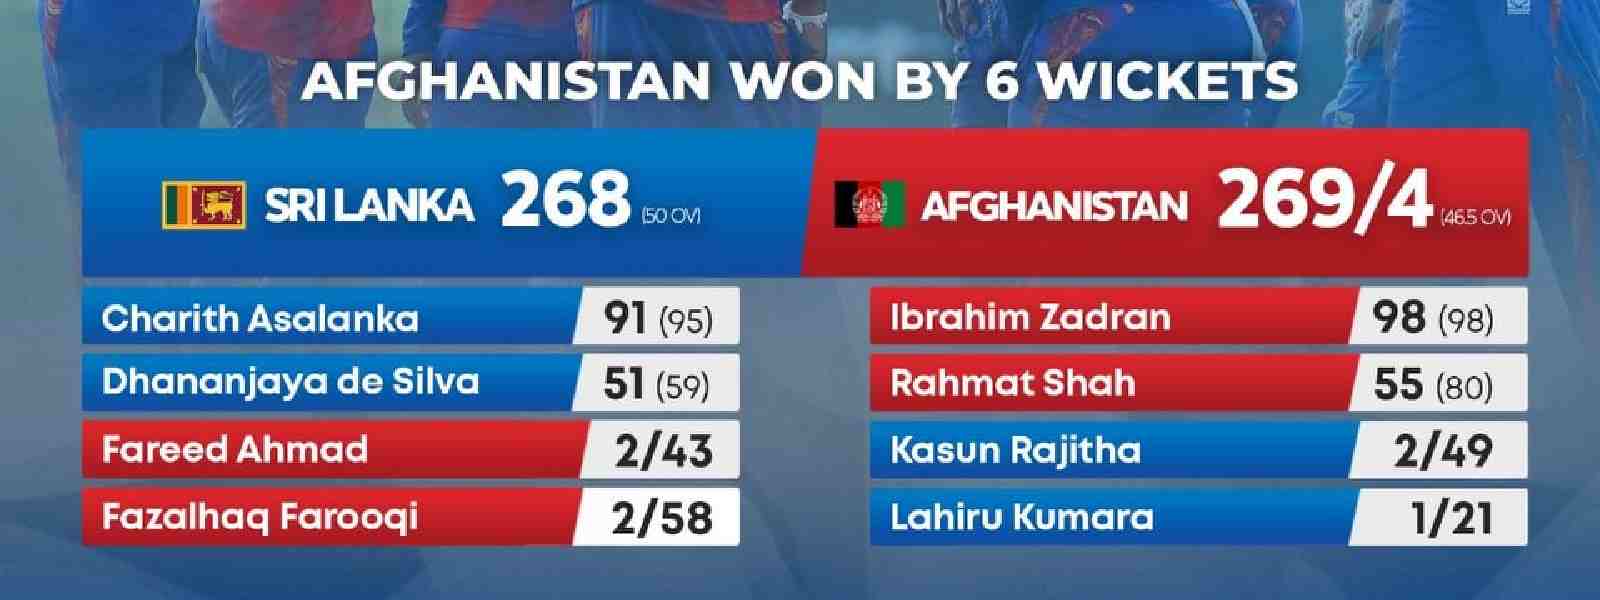 Afghanistan defeat Sri Lanka by 6 wickets in 1st ODI